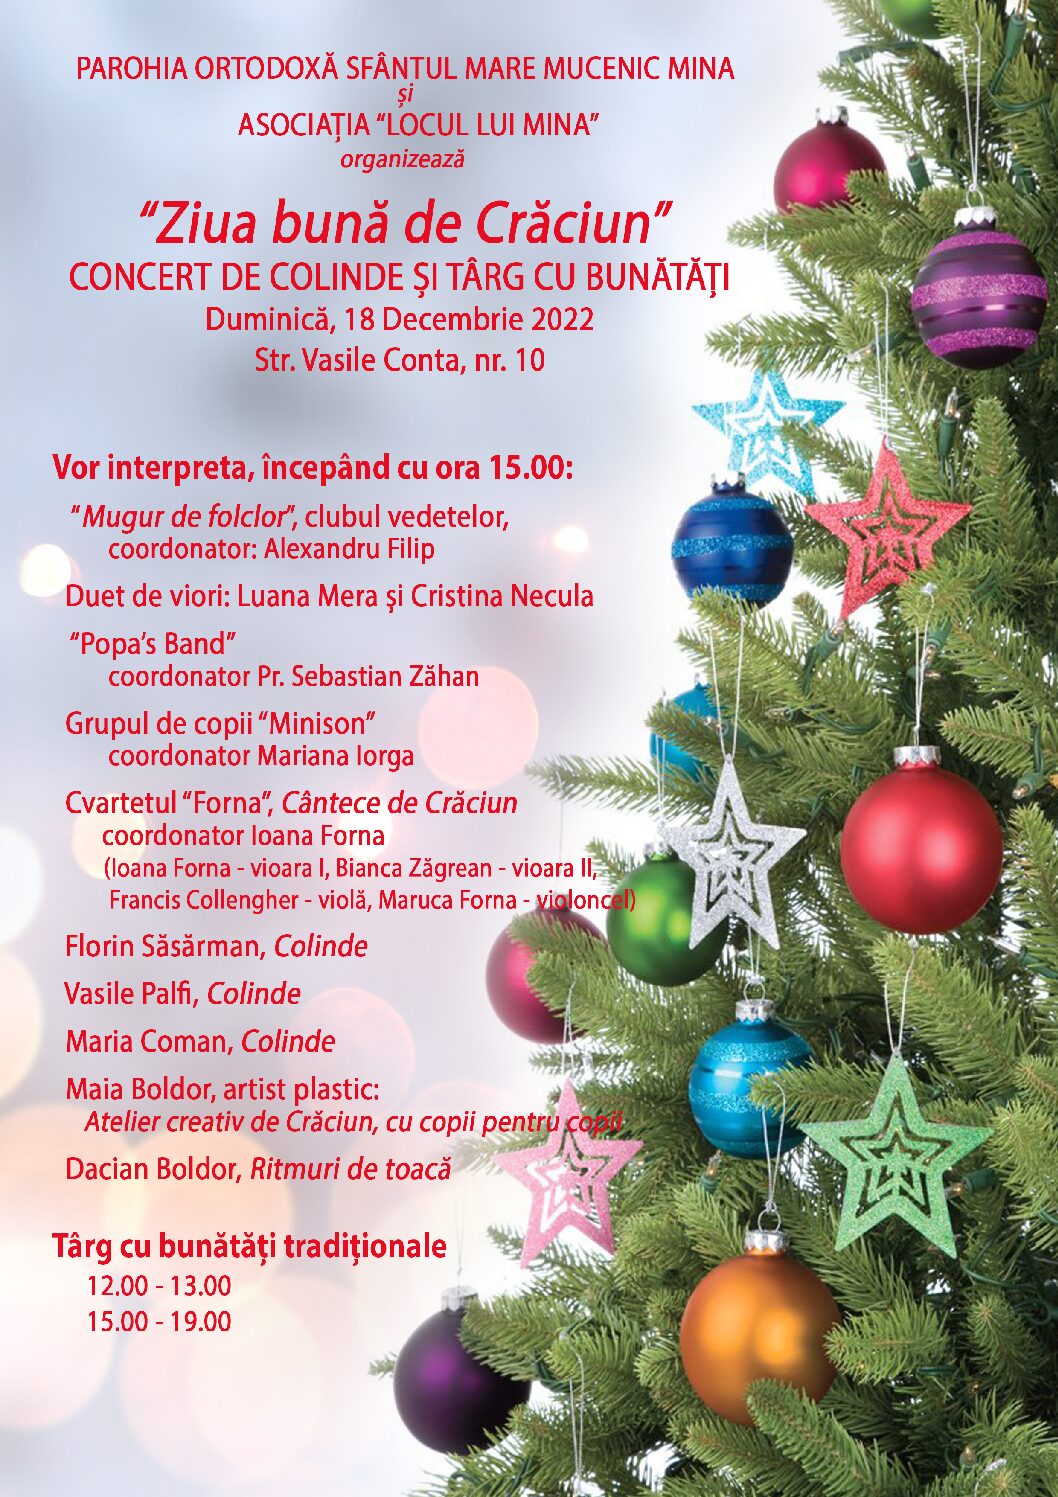 „Ziua bună de Crăciun” concert de colinde și Târg cu bunătăți | Parohia Ortodoxă „Sfântul Mare Mucenic Mina” și Asociația „Locul lui Mina”